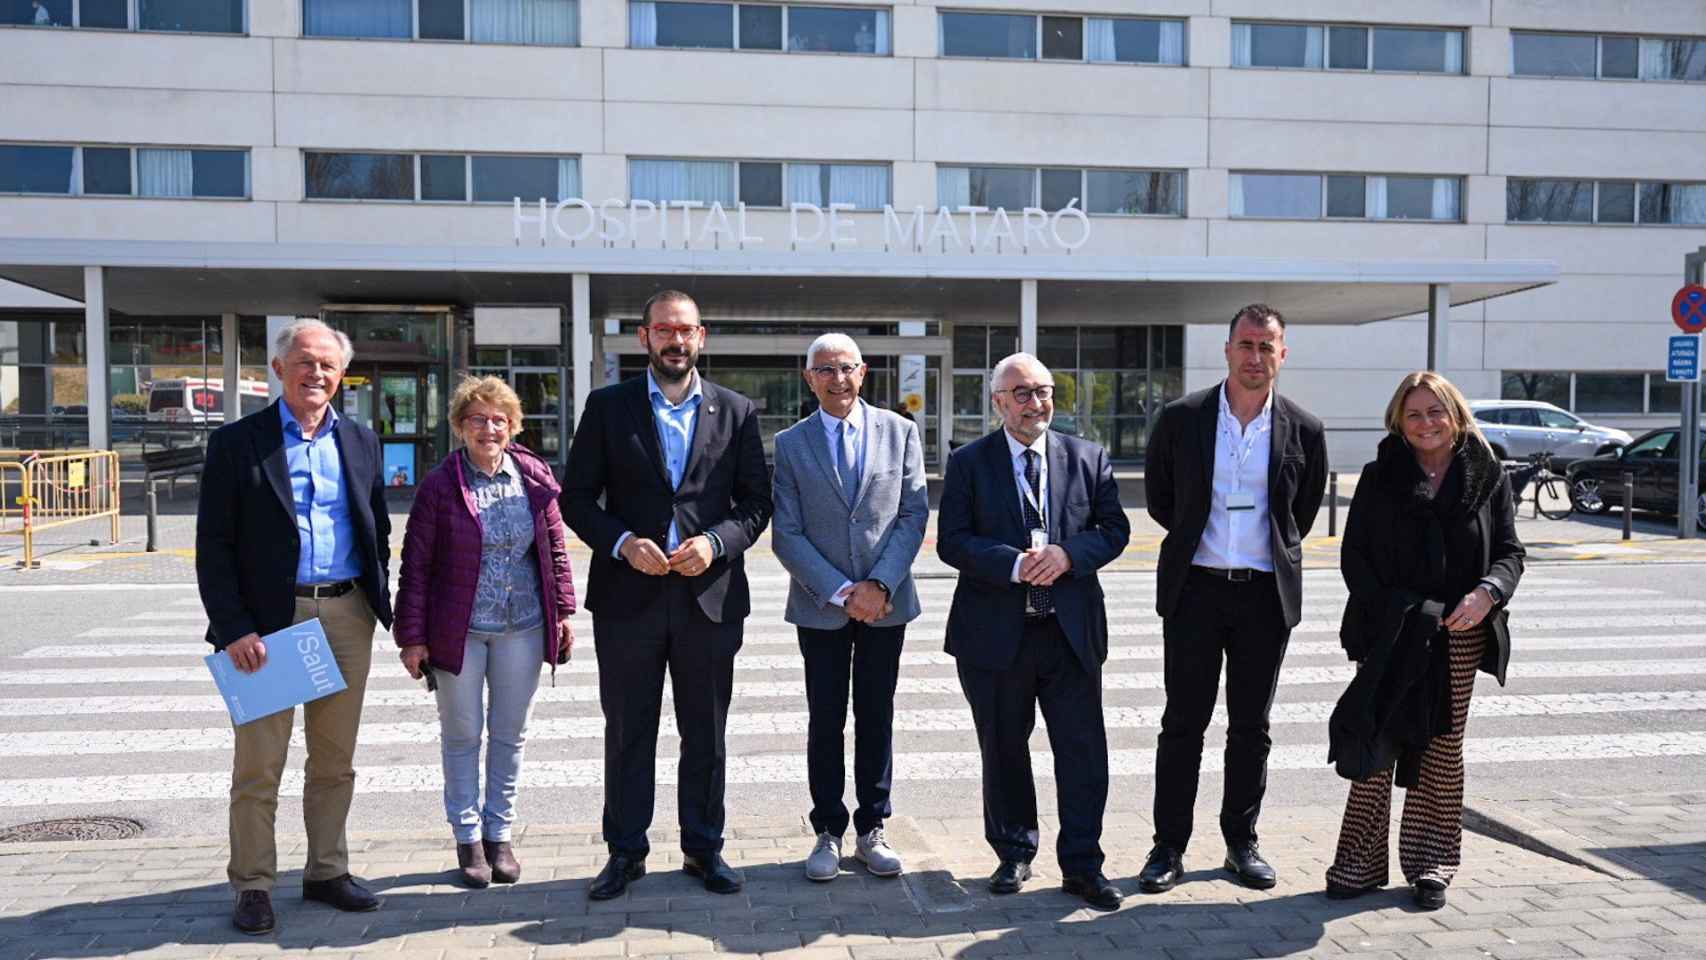 El conseller de Salud de la Generalitat, Manel Balcells, junto a otras autoridades tras el anuncio de la construcción del nuevo hospital de Mataró / GOVERN